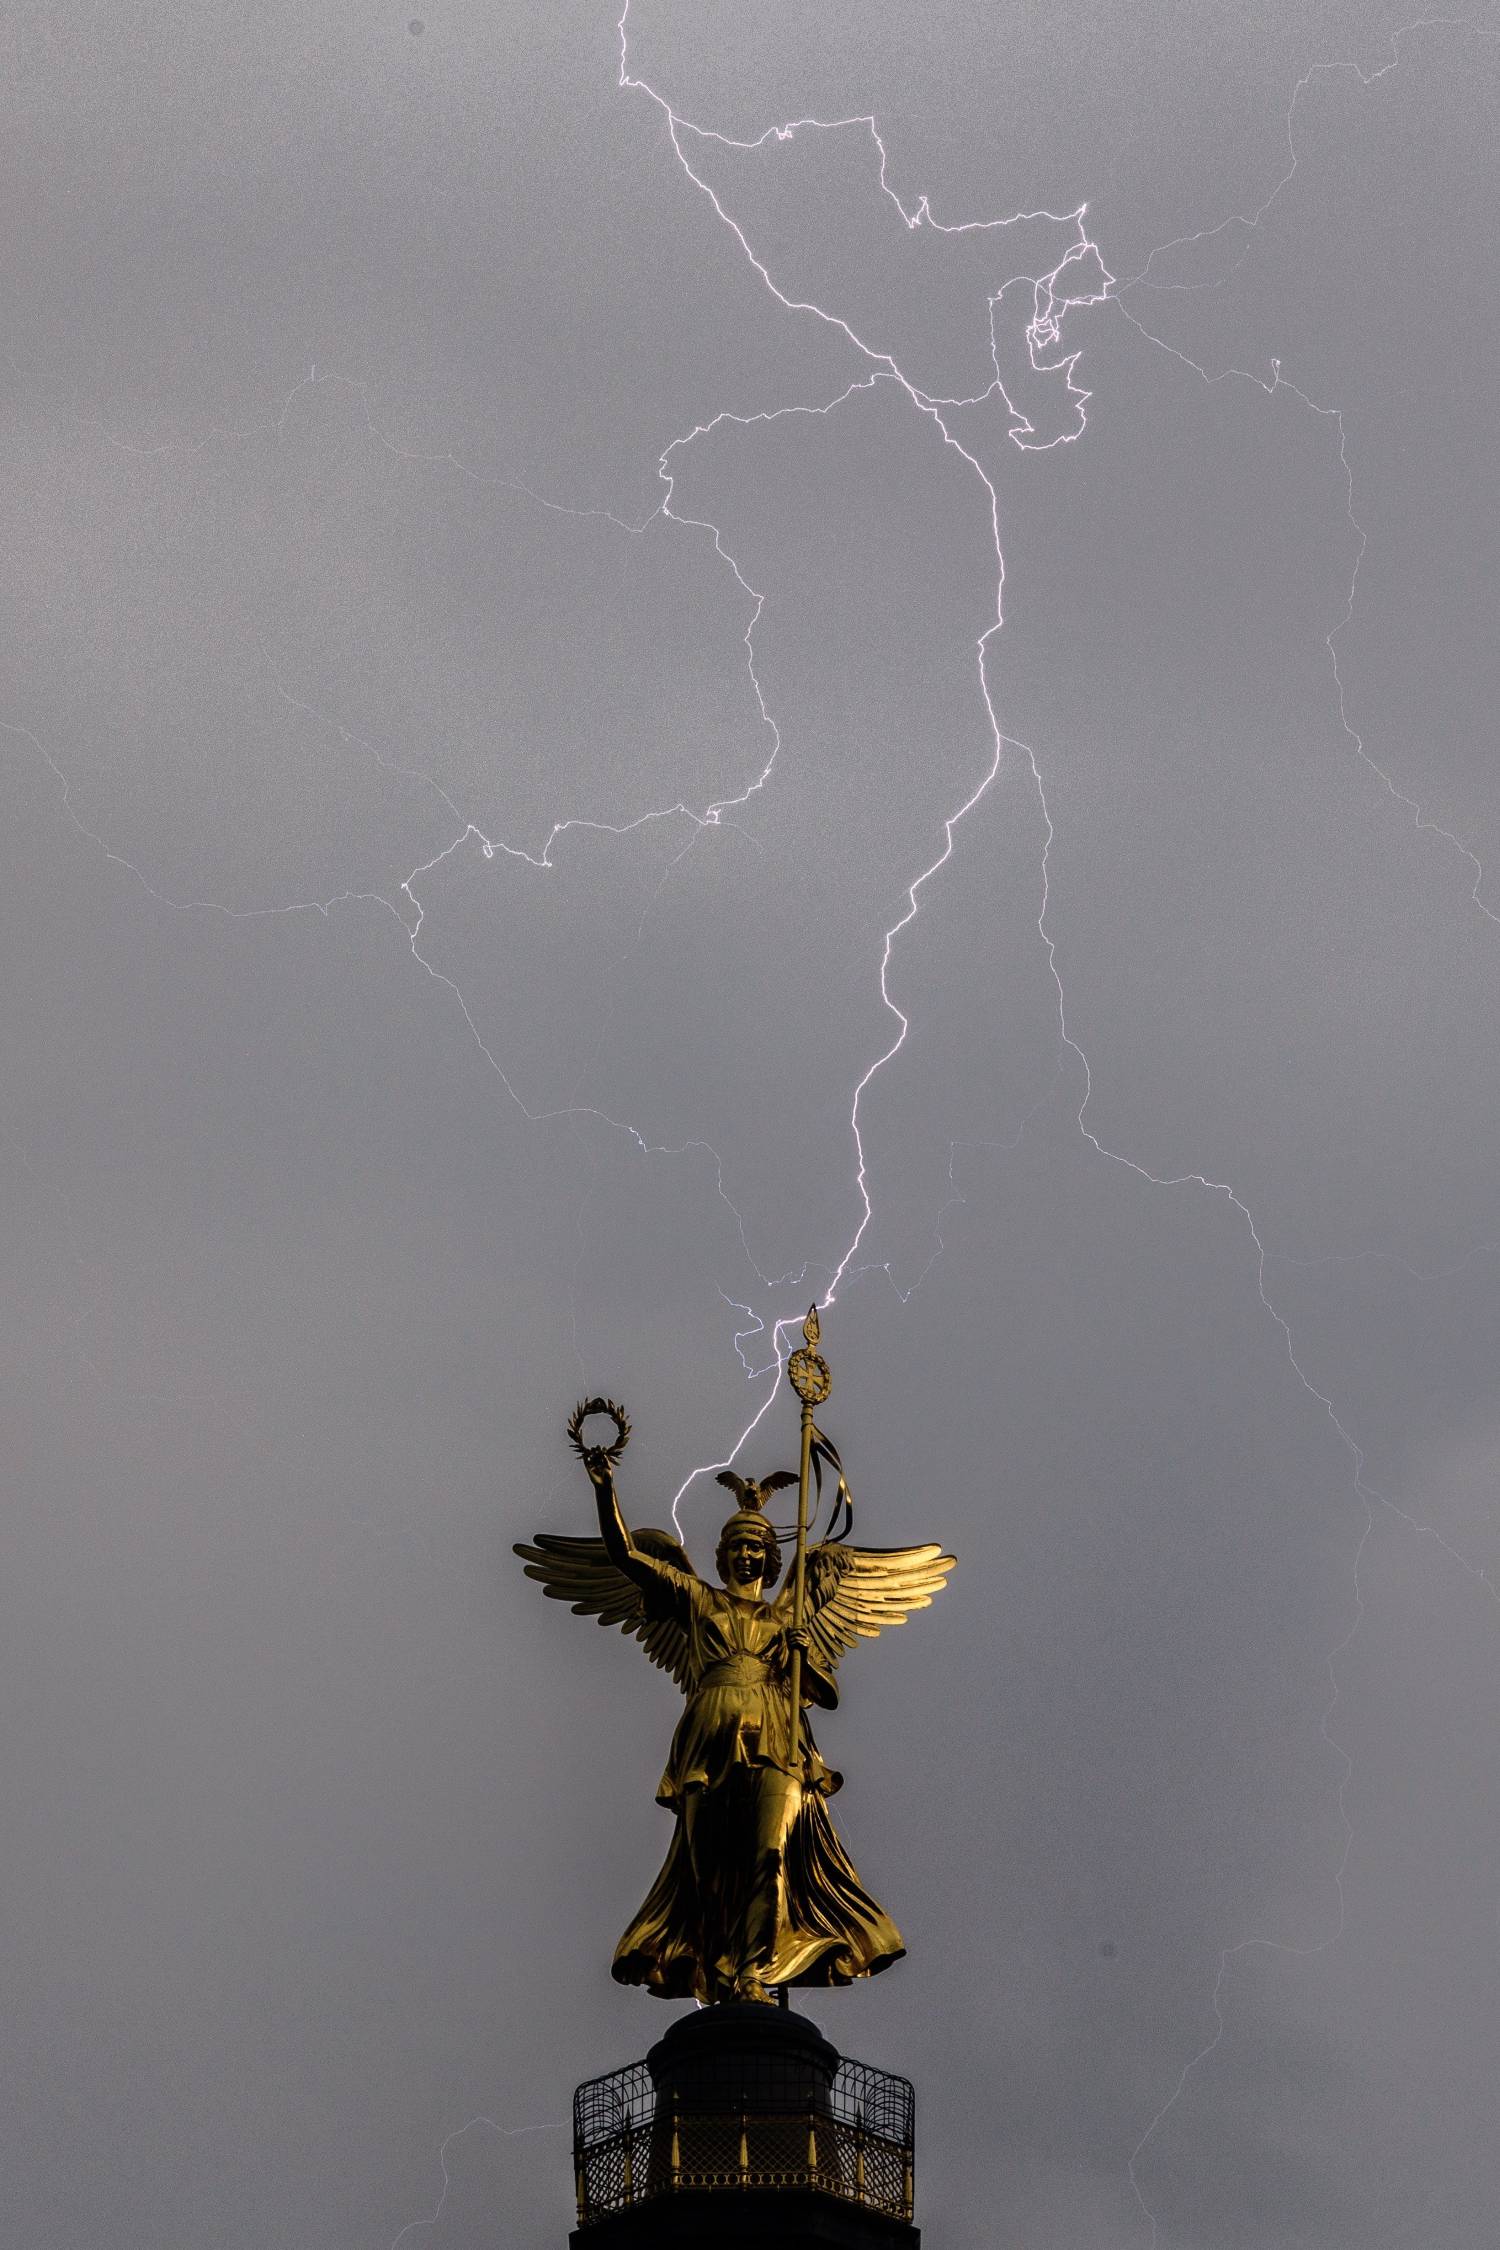 Un rayo cae tras la estatua que corona la Columna de la Victoria en Berlín (Alemania), durante una tormenta eléctrica sobre el cielo de la capital germana. 